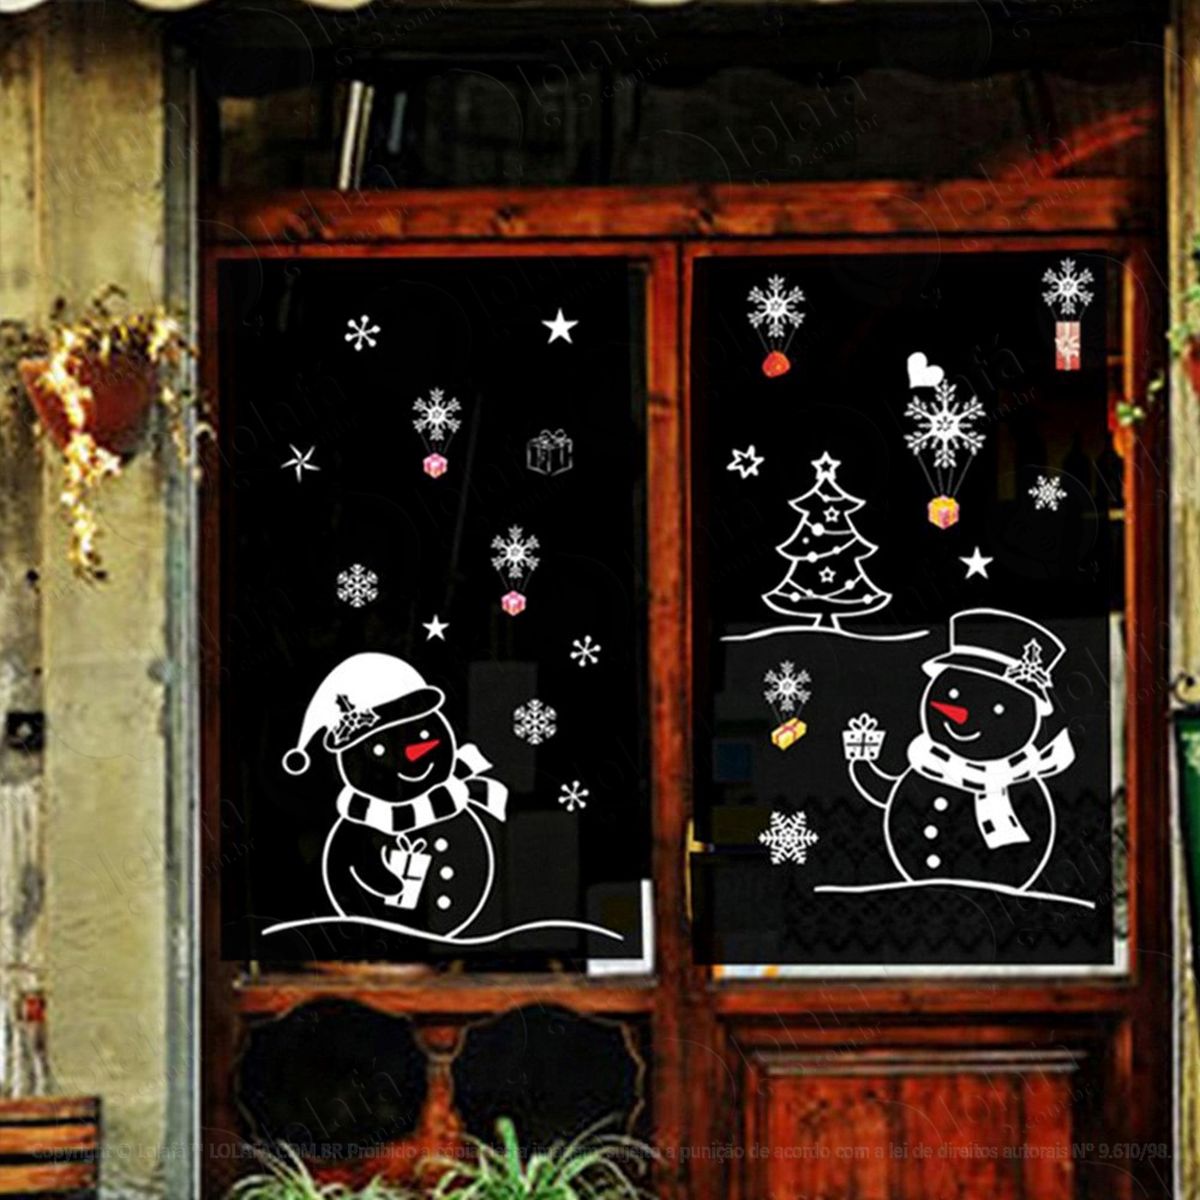 bonecos de neve adesivo de natal para vitrine, parede, porta de vidro - decoração natalina mod:60